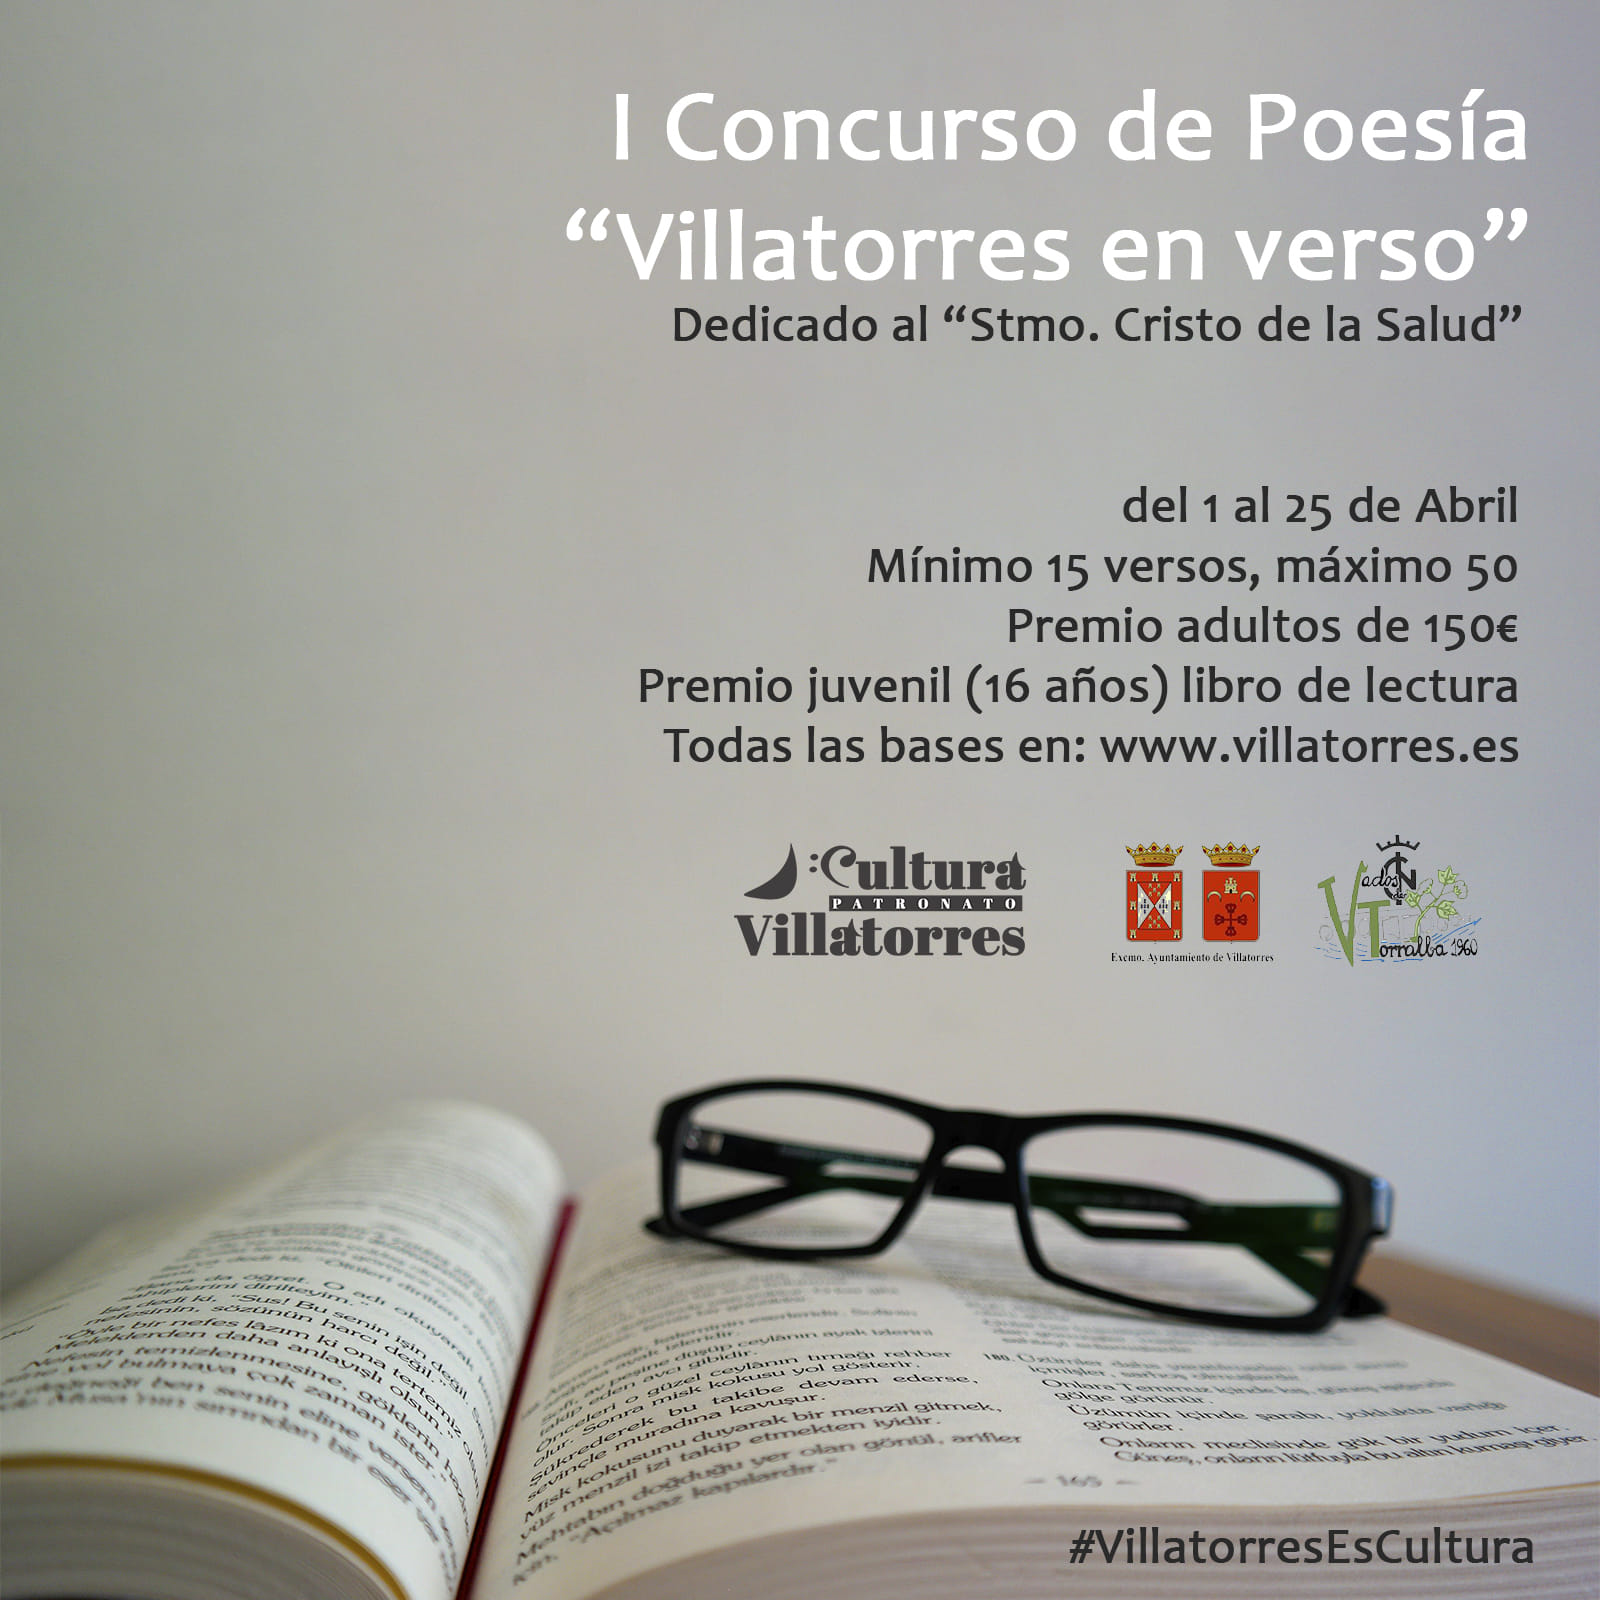 I Concurso de poesía "Villatorres en Verso" dedicado al Cristo de la Salud